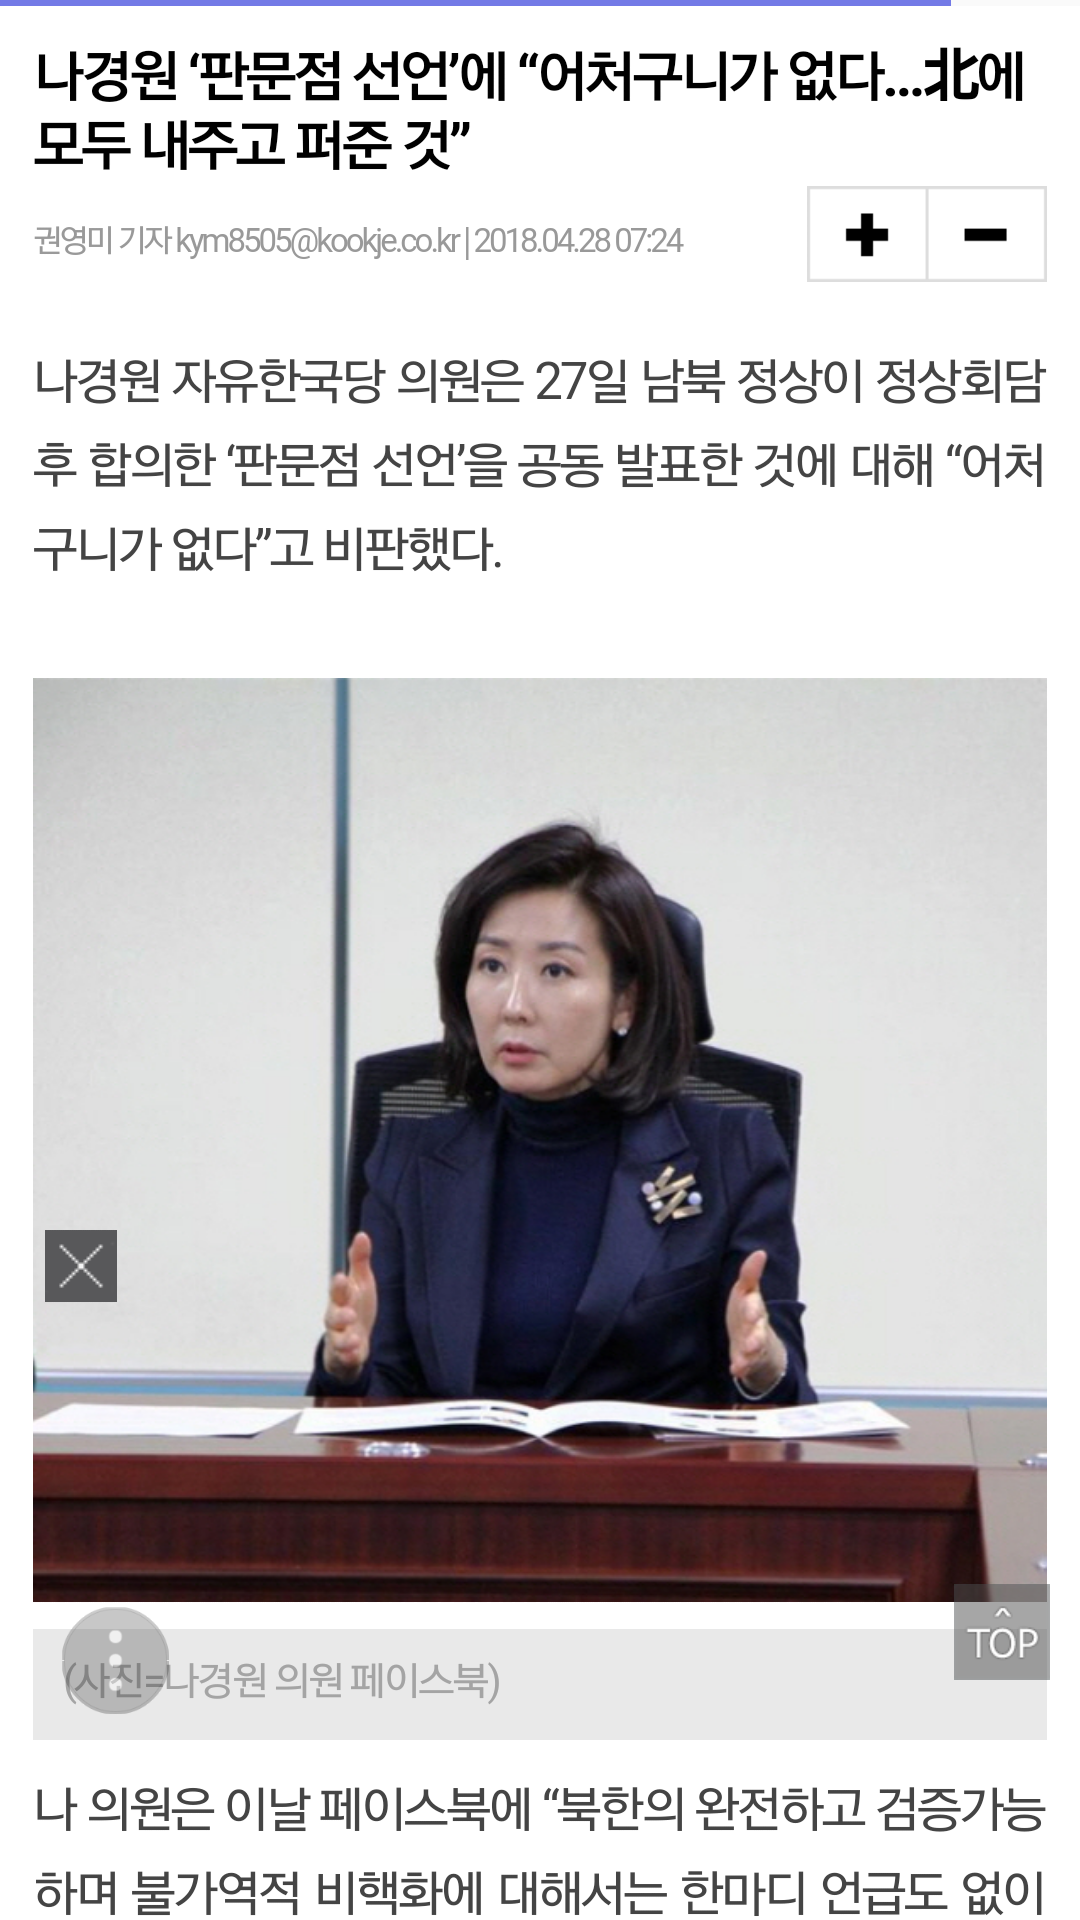 대한민국 국회의원